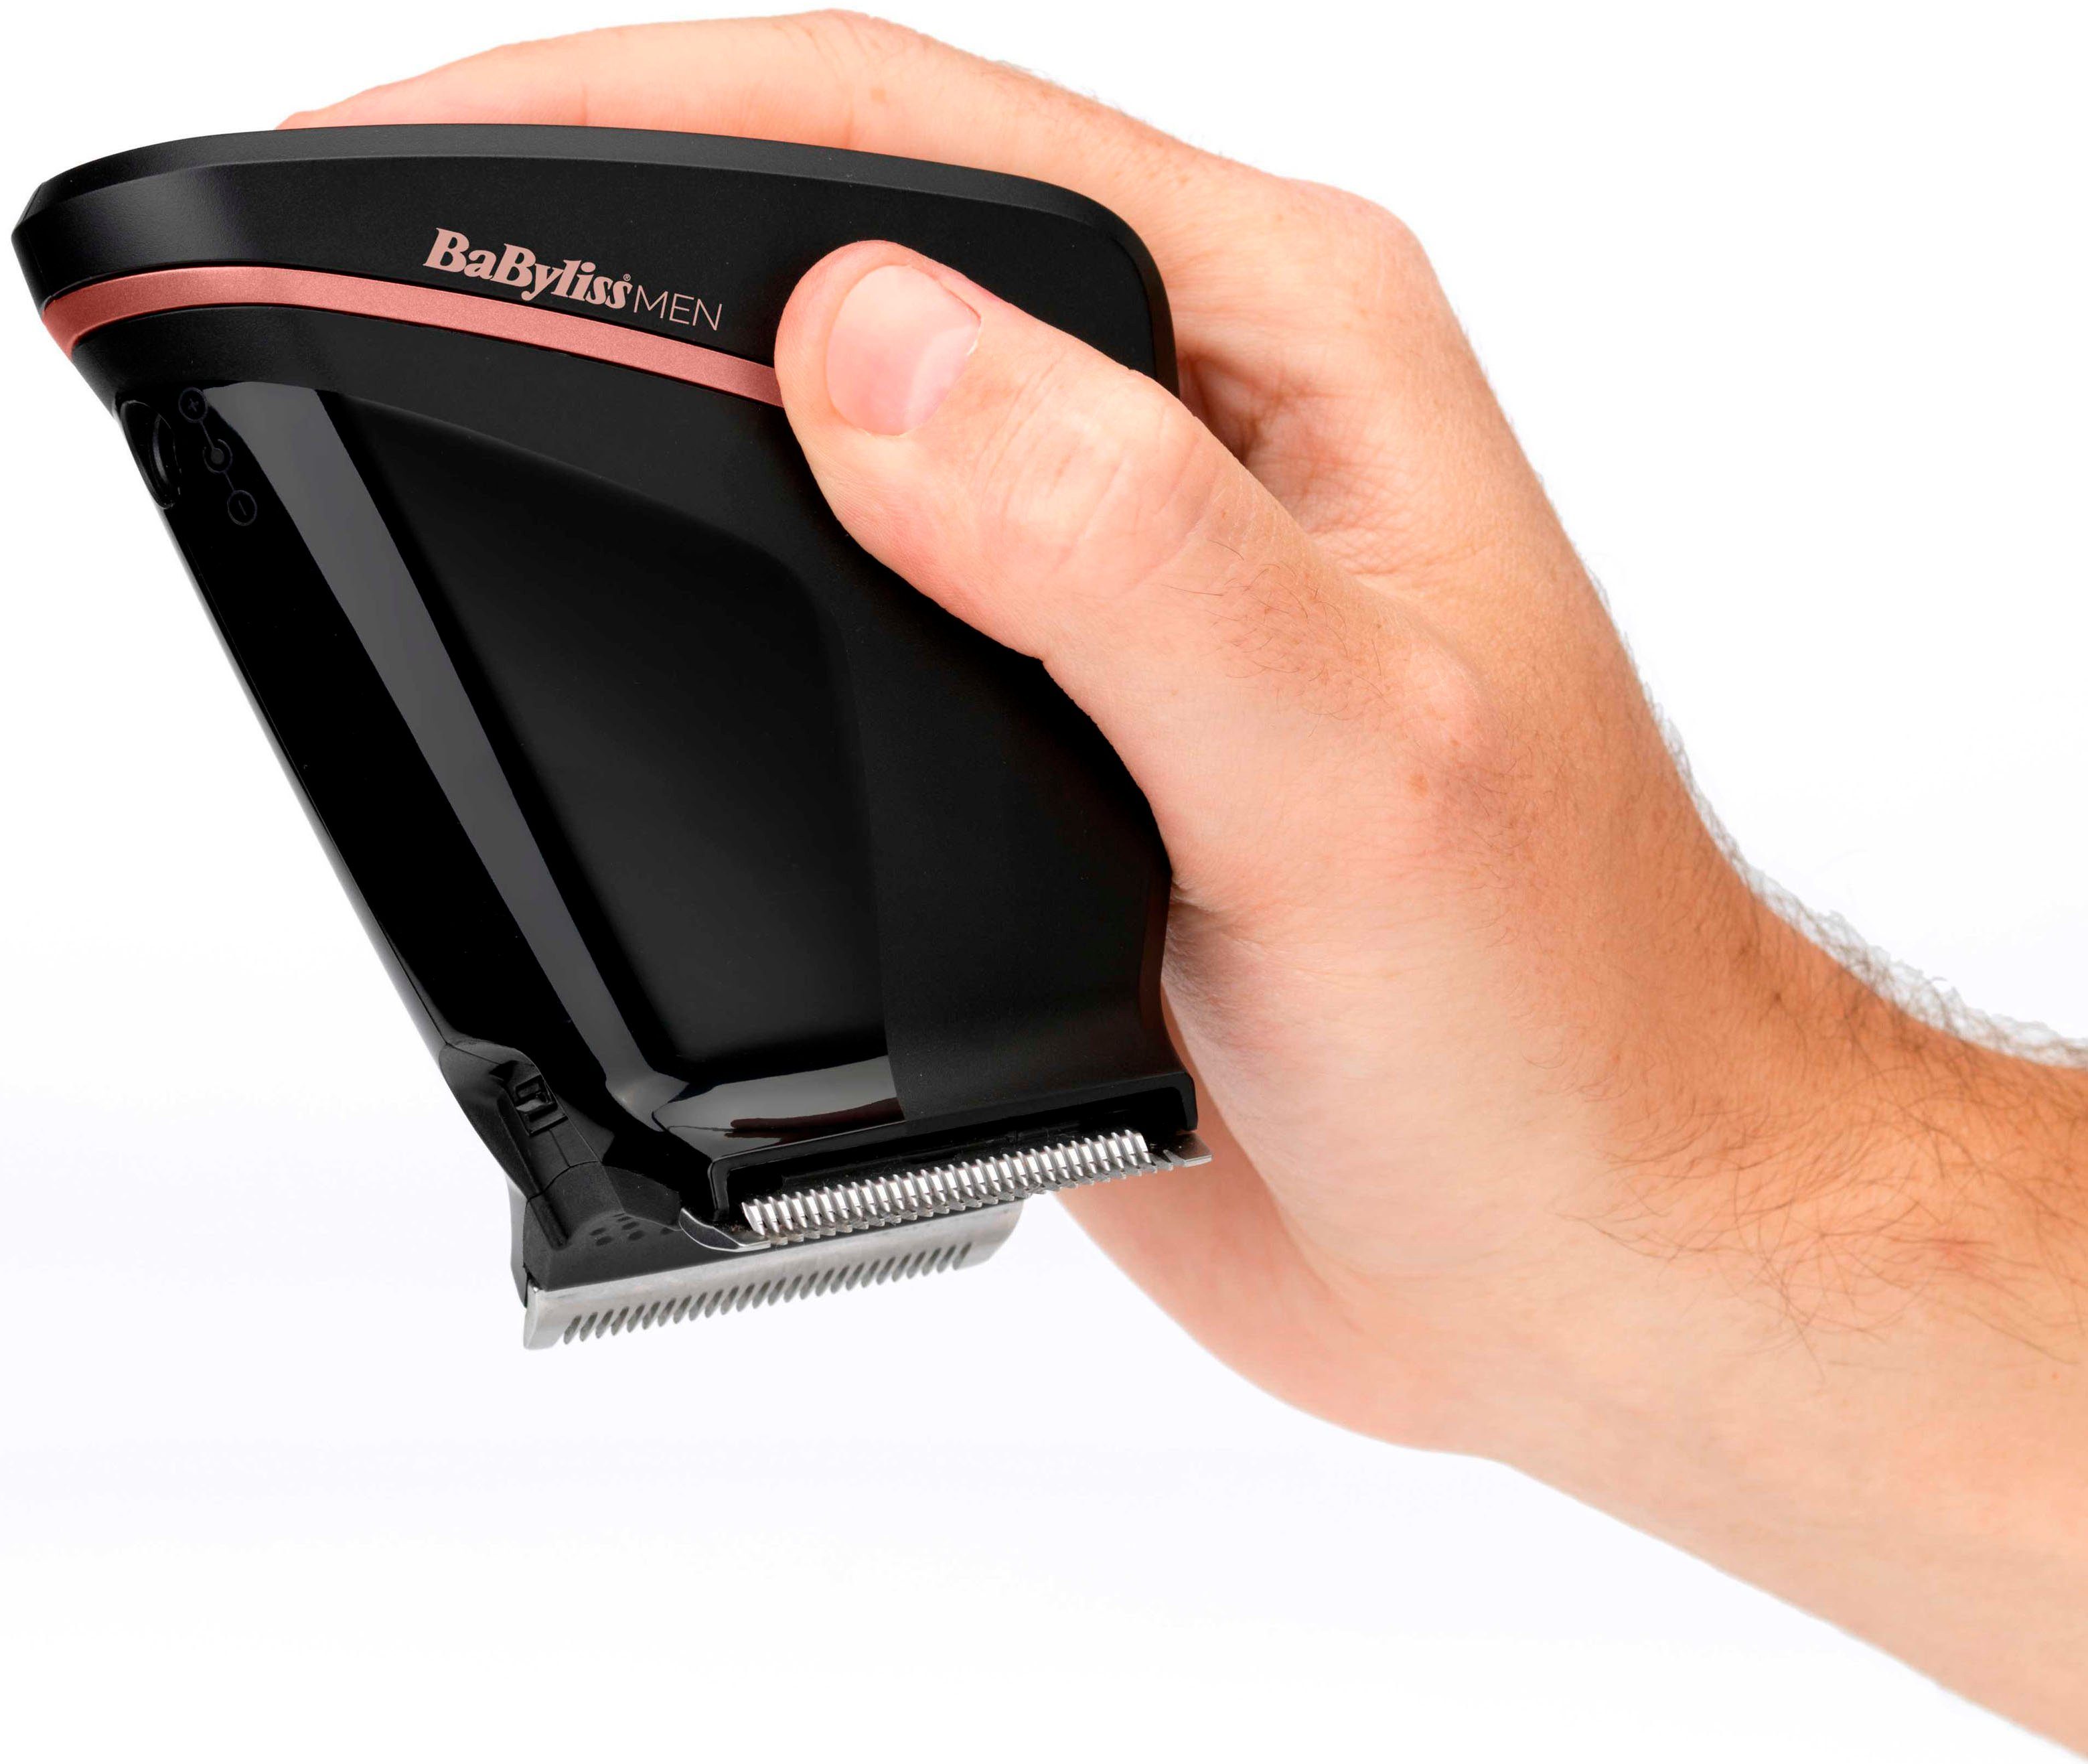 MEN BaByliss Design ergonomischer 0,3-13mm Haarschneider Haarschneider Crewcut, SC758E